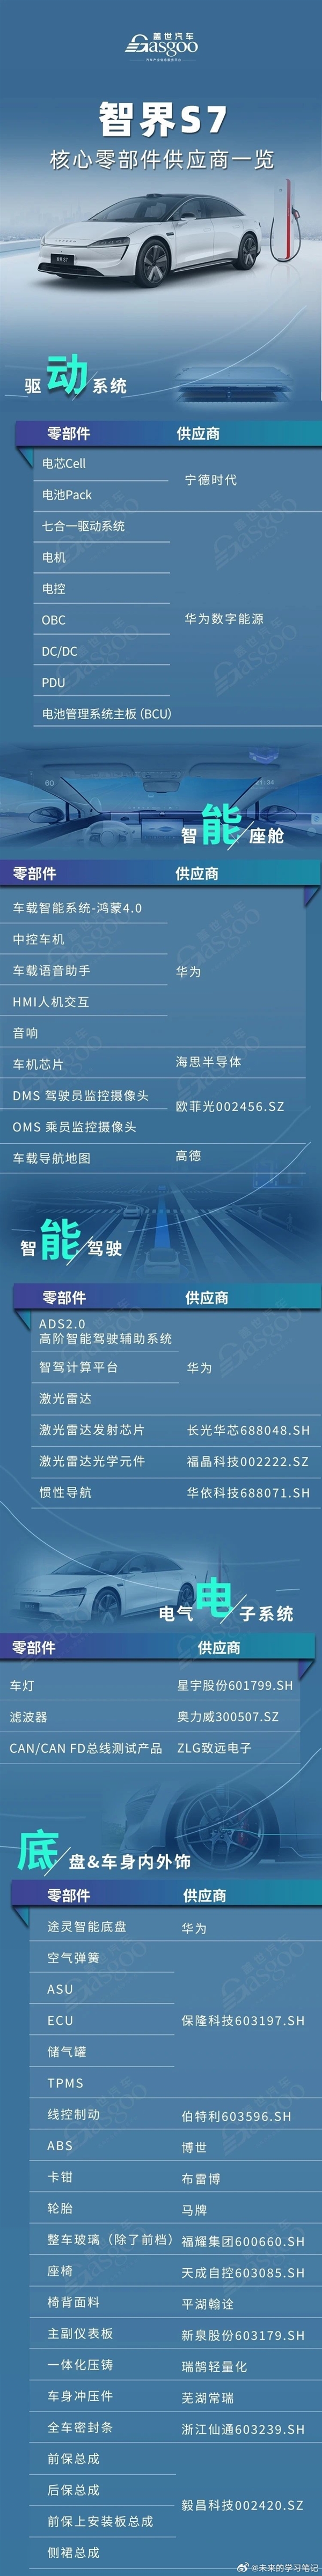 智界S7核心零部件供应商一览：华为占大头  第2张